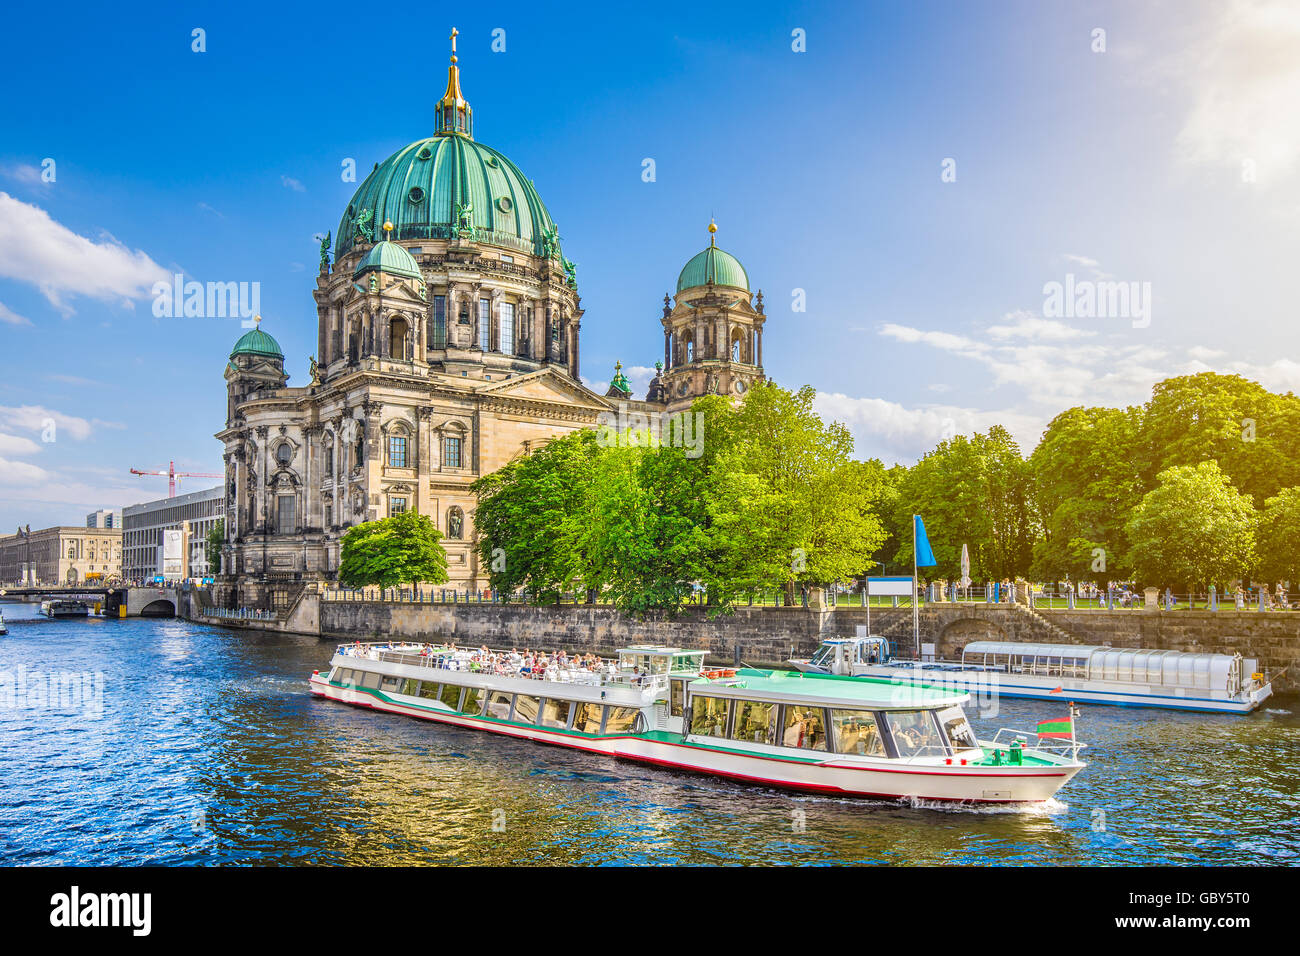 Belle vue sur le Berliner Dom (Cathédrale de Berlin) à la célèbre Museumsinsel (île des Musées) avec bateau d'excursion sur la rivière Spree dans b Banque D'Images